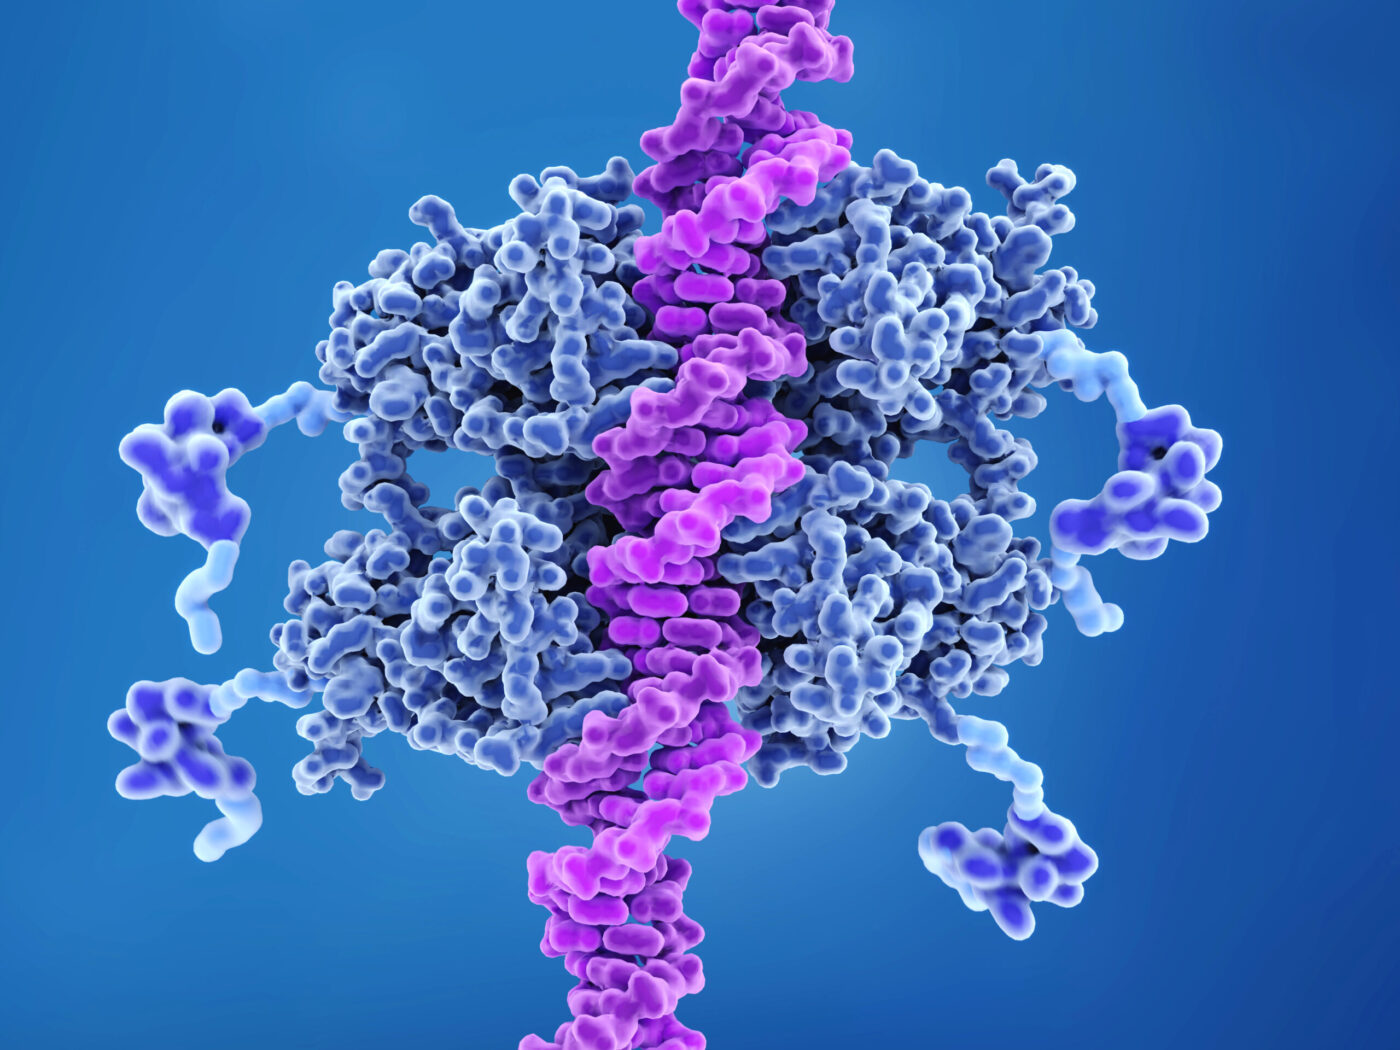 البروتين بي 53: القاسم المشترك بين السرطانات البشرية.. كيف اكتُشف؟ وما وظيفته؟